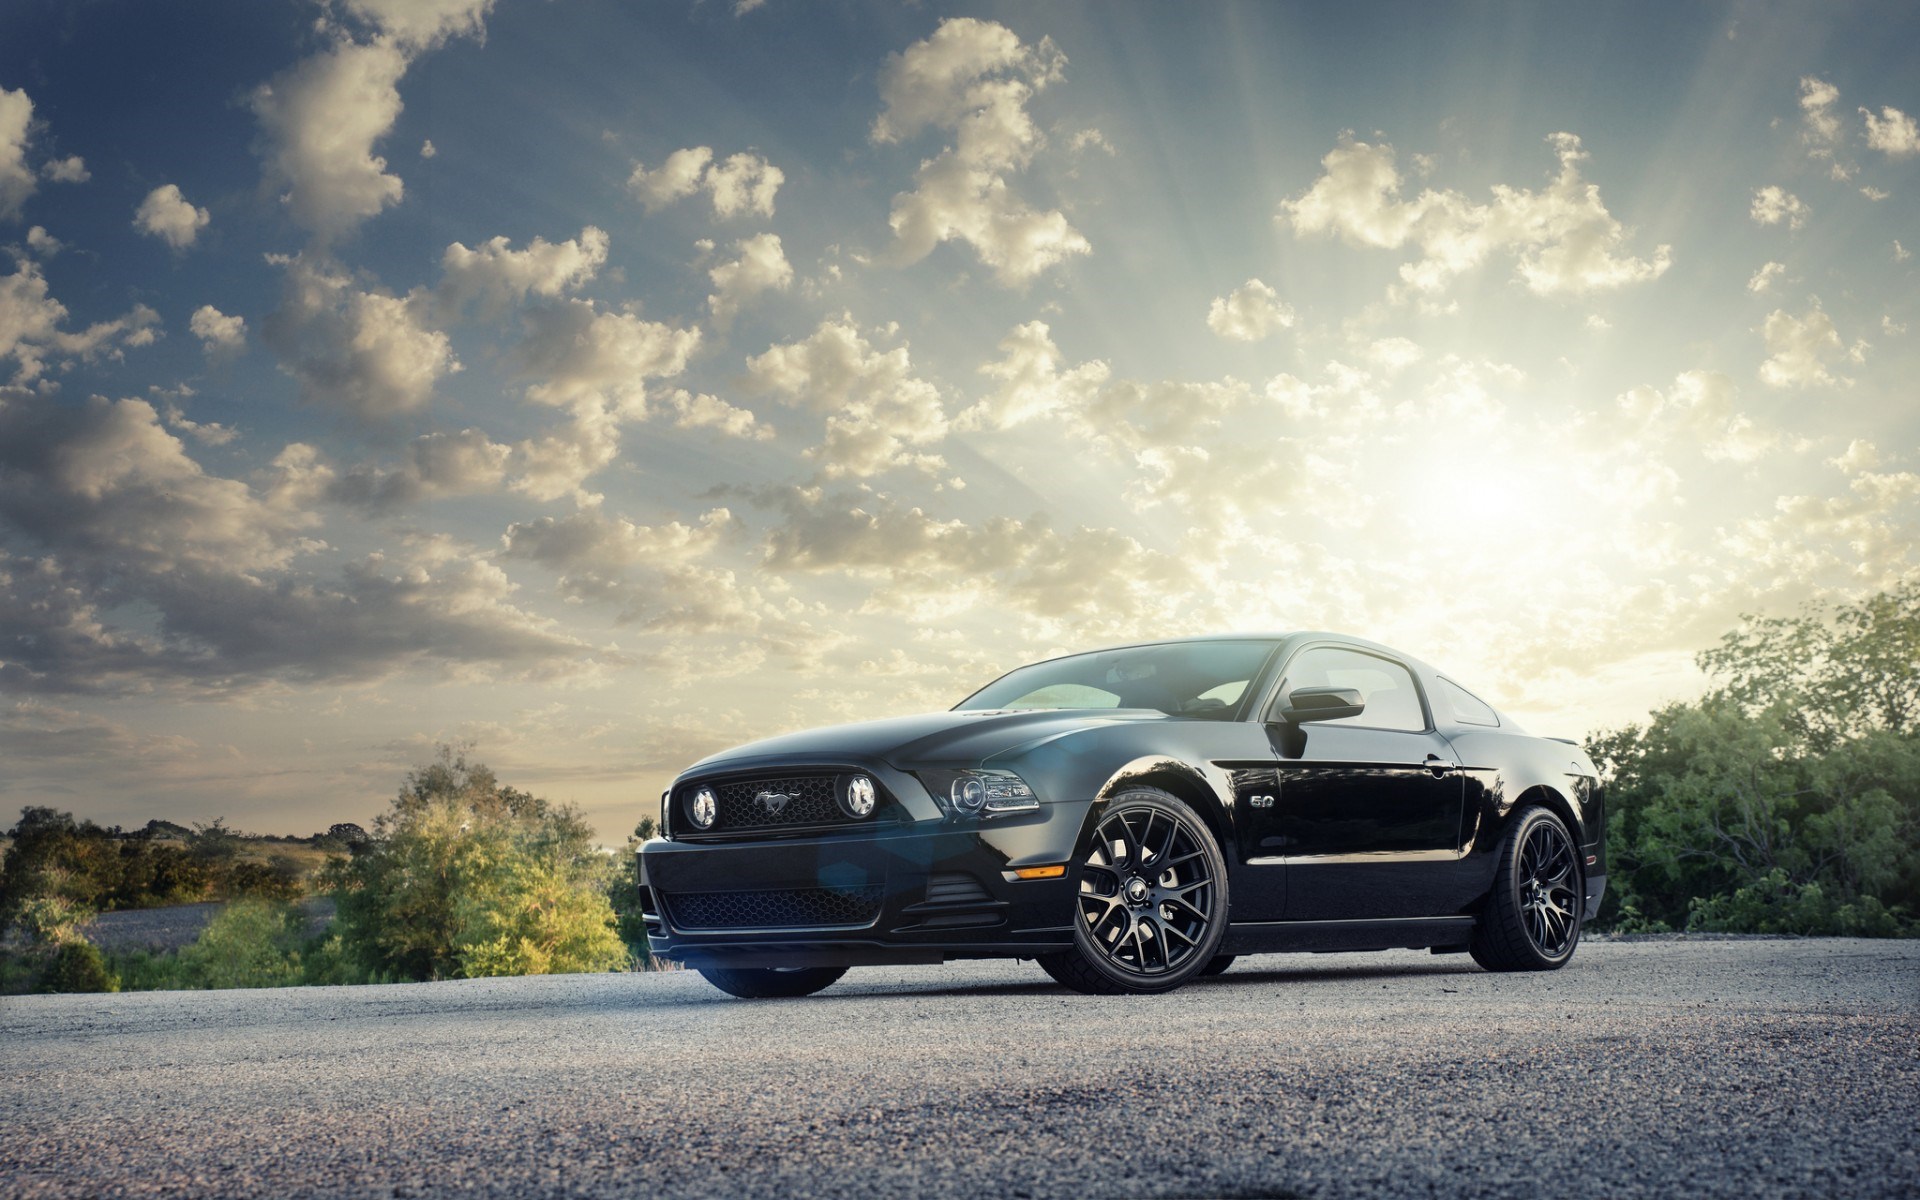 Bạn yêu thích chiếc Ford Mustang nổi tiếng với phong cách cổ điển và mạnh mẽ? Hãy tải ngay hình nền HD đẹp lung linh của chiếc xe này để thỏa mãn sự đam mê của mình. Bạn sẽ không thể rời mắt khỏi những đường nét hoàn hảo và phong cách tinh tế của chiếc Ford Mustang trên hình nền này.